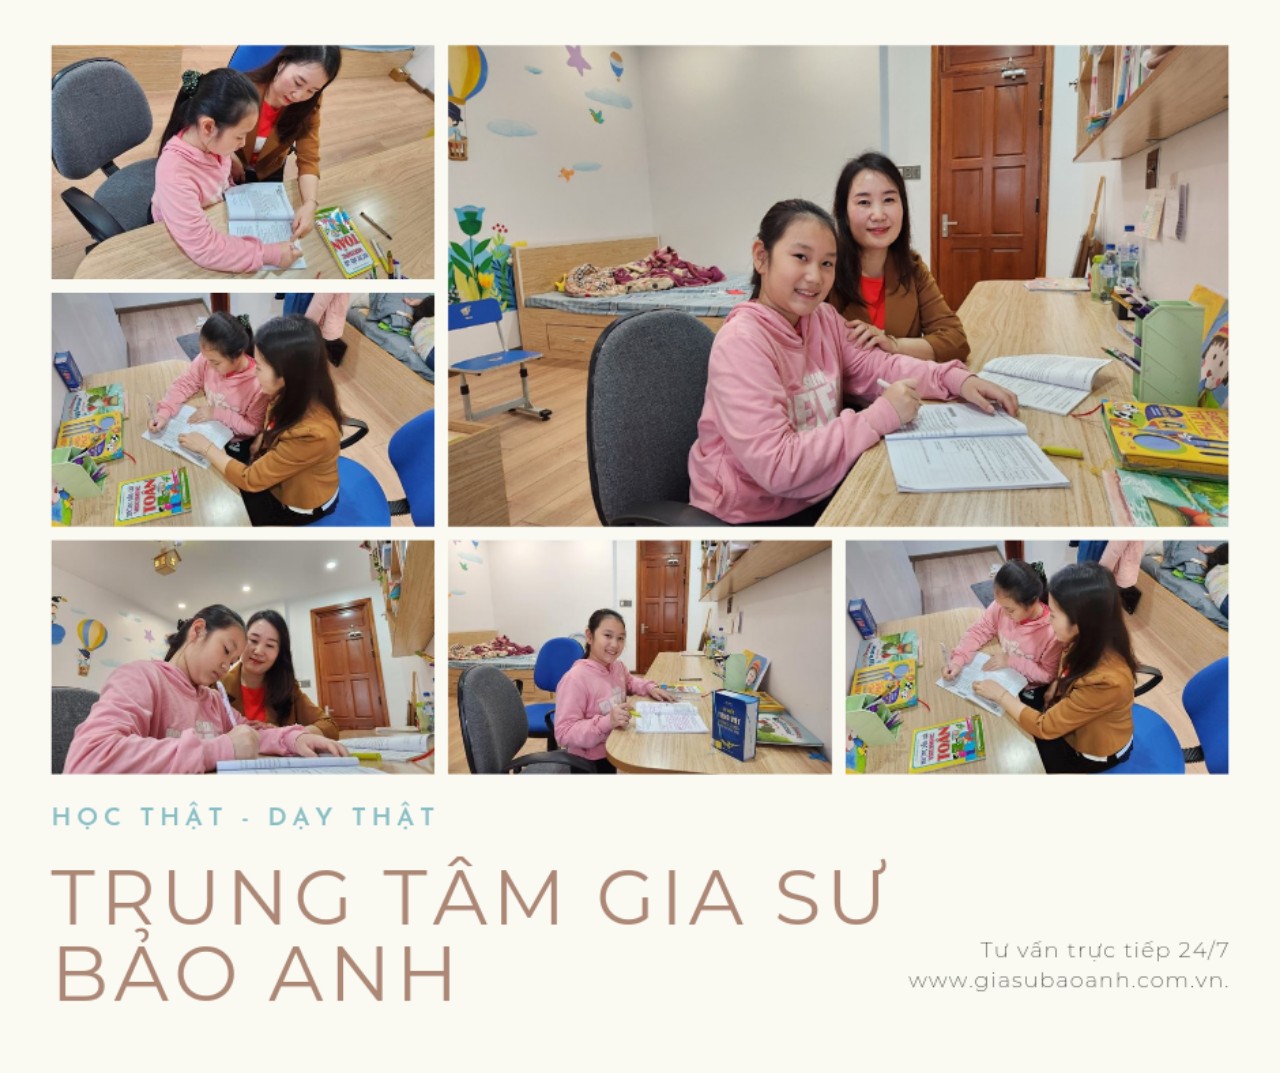 Phương pháp dạy Tiếng Việt, Toán học và Tiếng Anh của gia sư tiểu học của trung tâm gia sư Bảo Anh